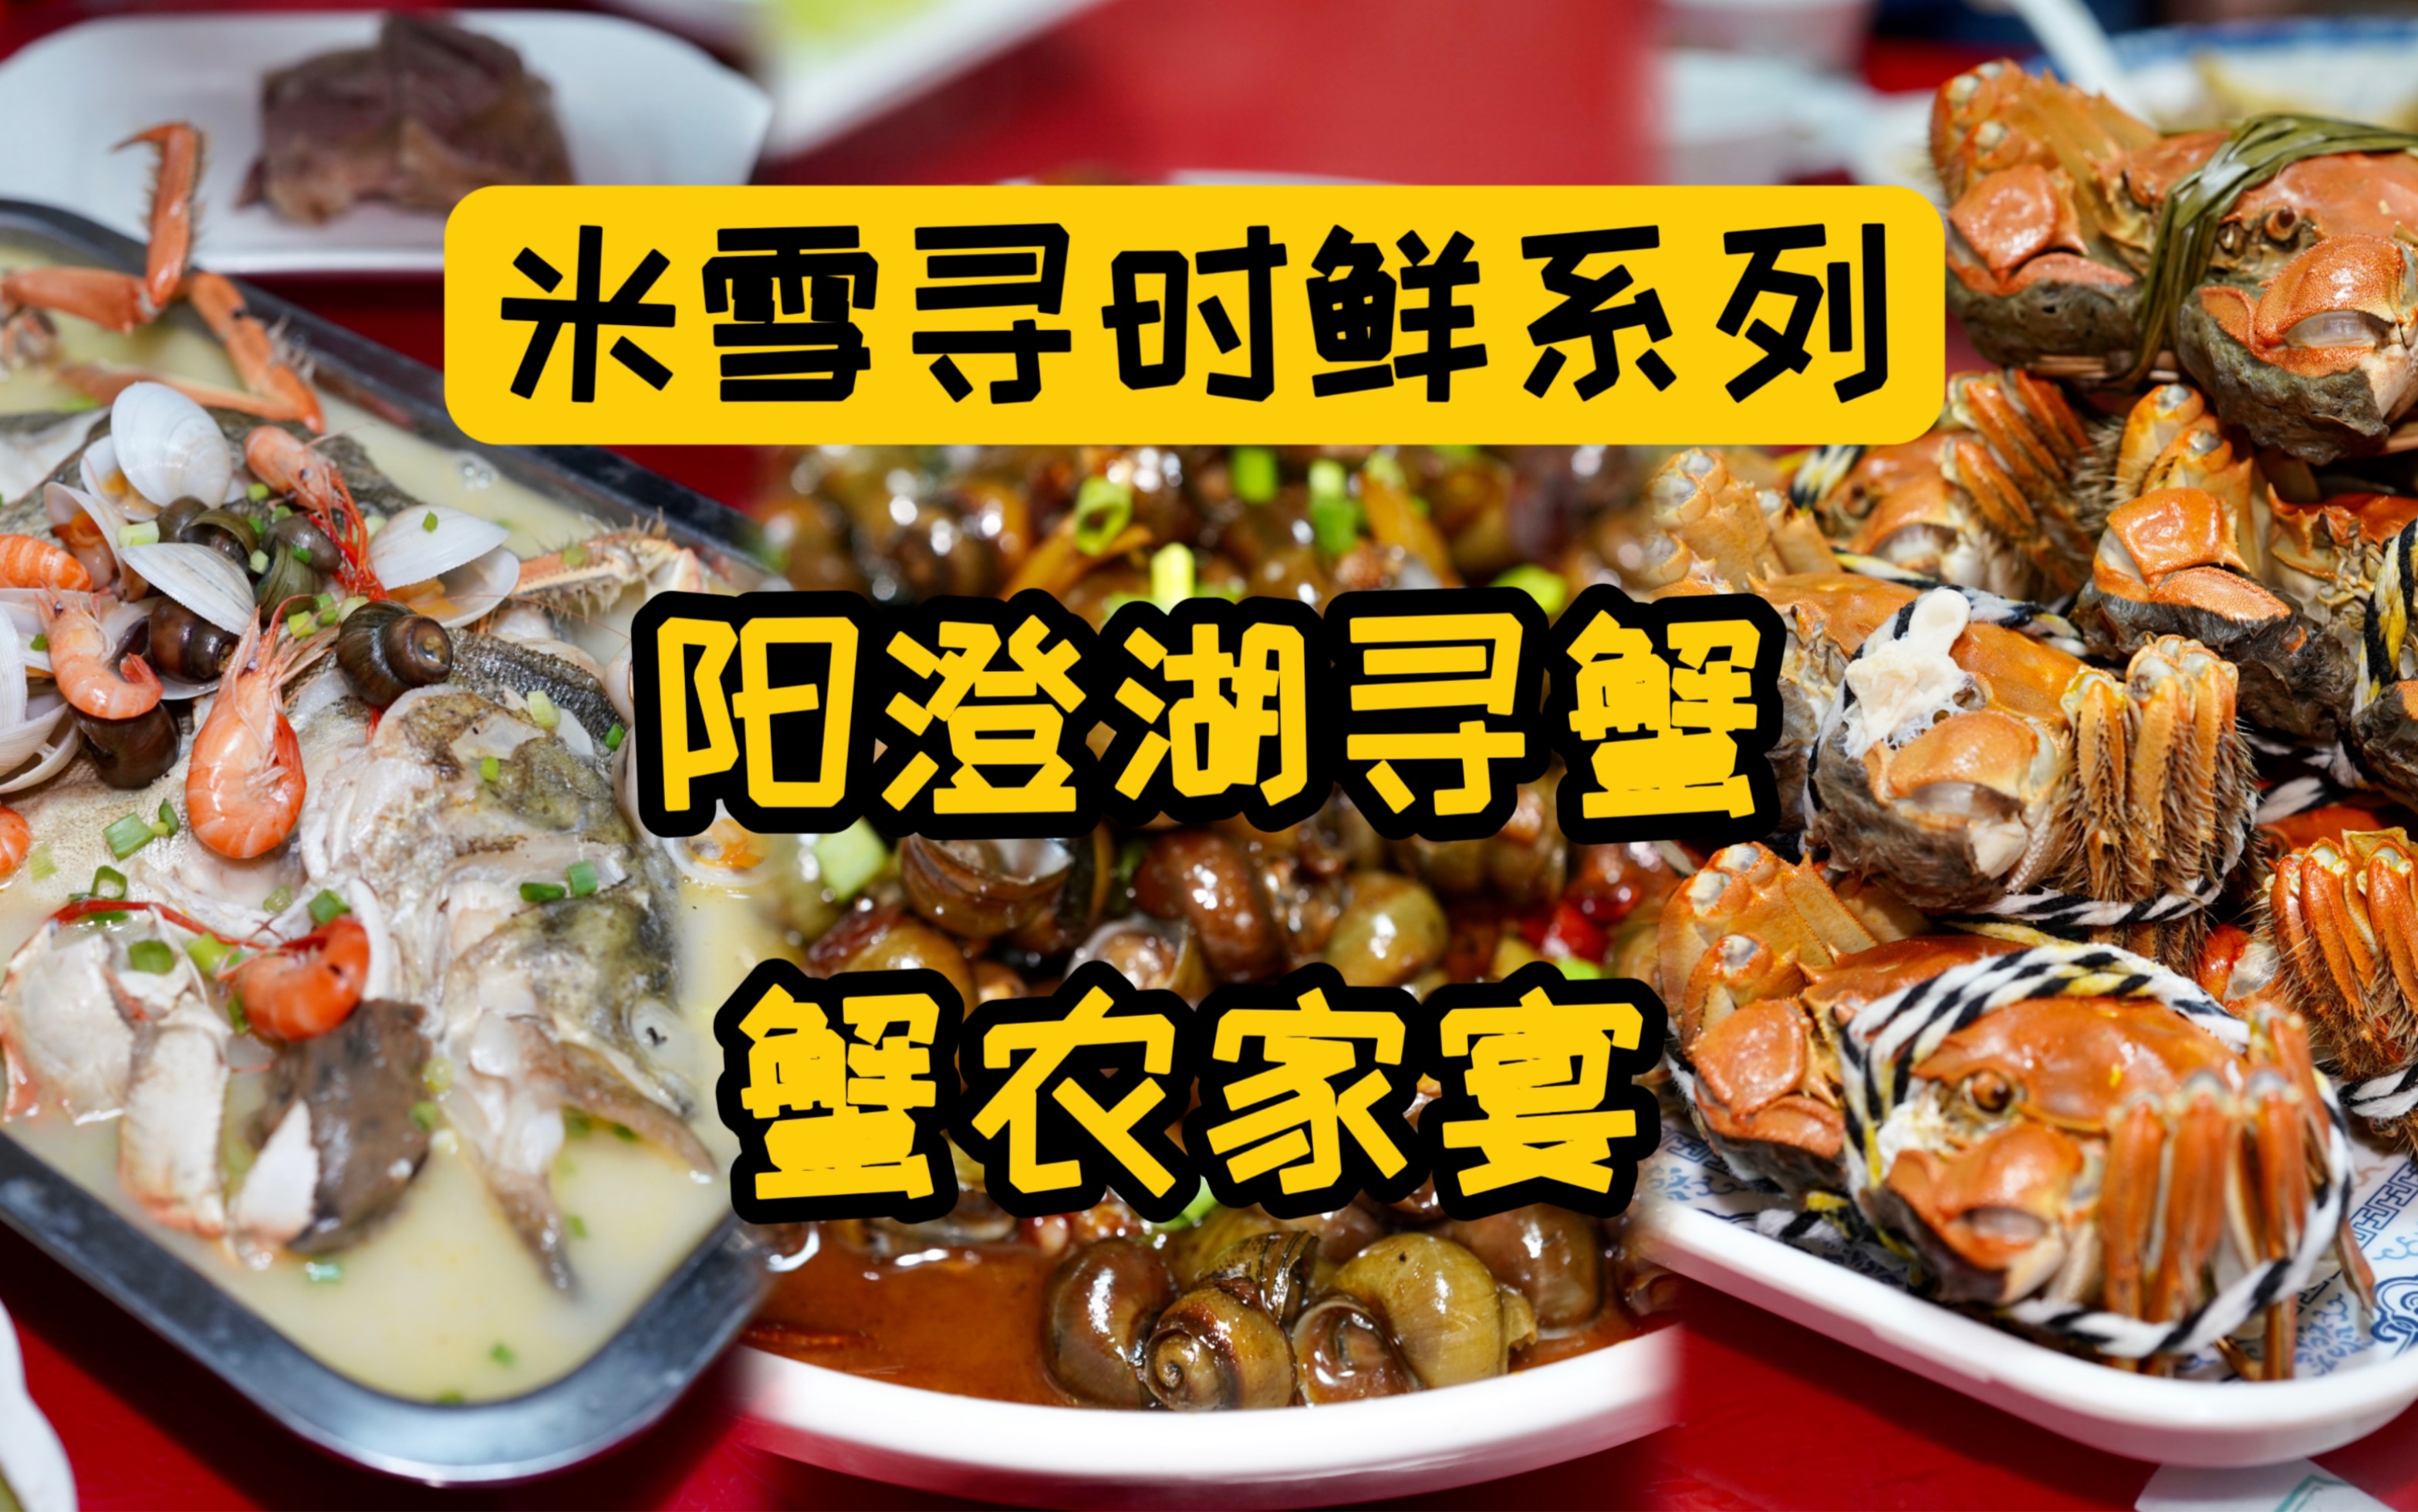 米雪吃翻香港预告片，有大神认得全视频里11家餐厅加一家酒店吗？-米雪食记-米雪食记-哔哩哔哩视频